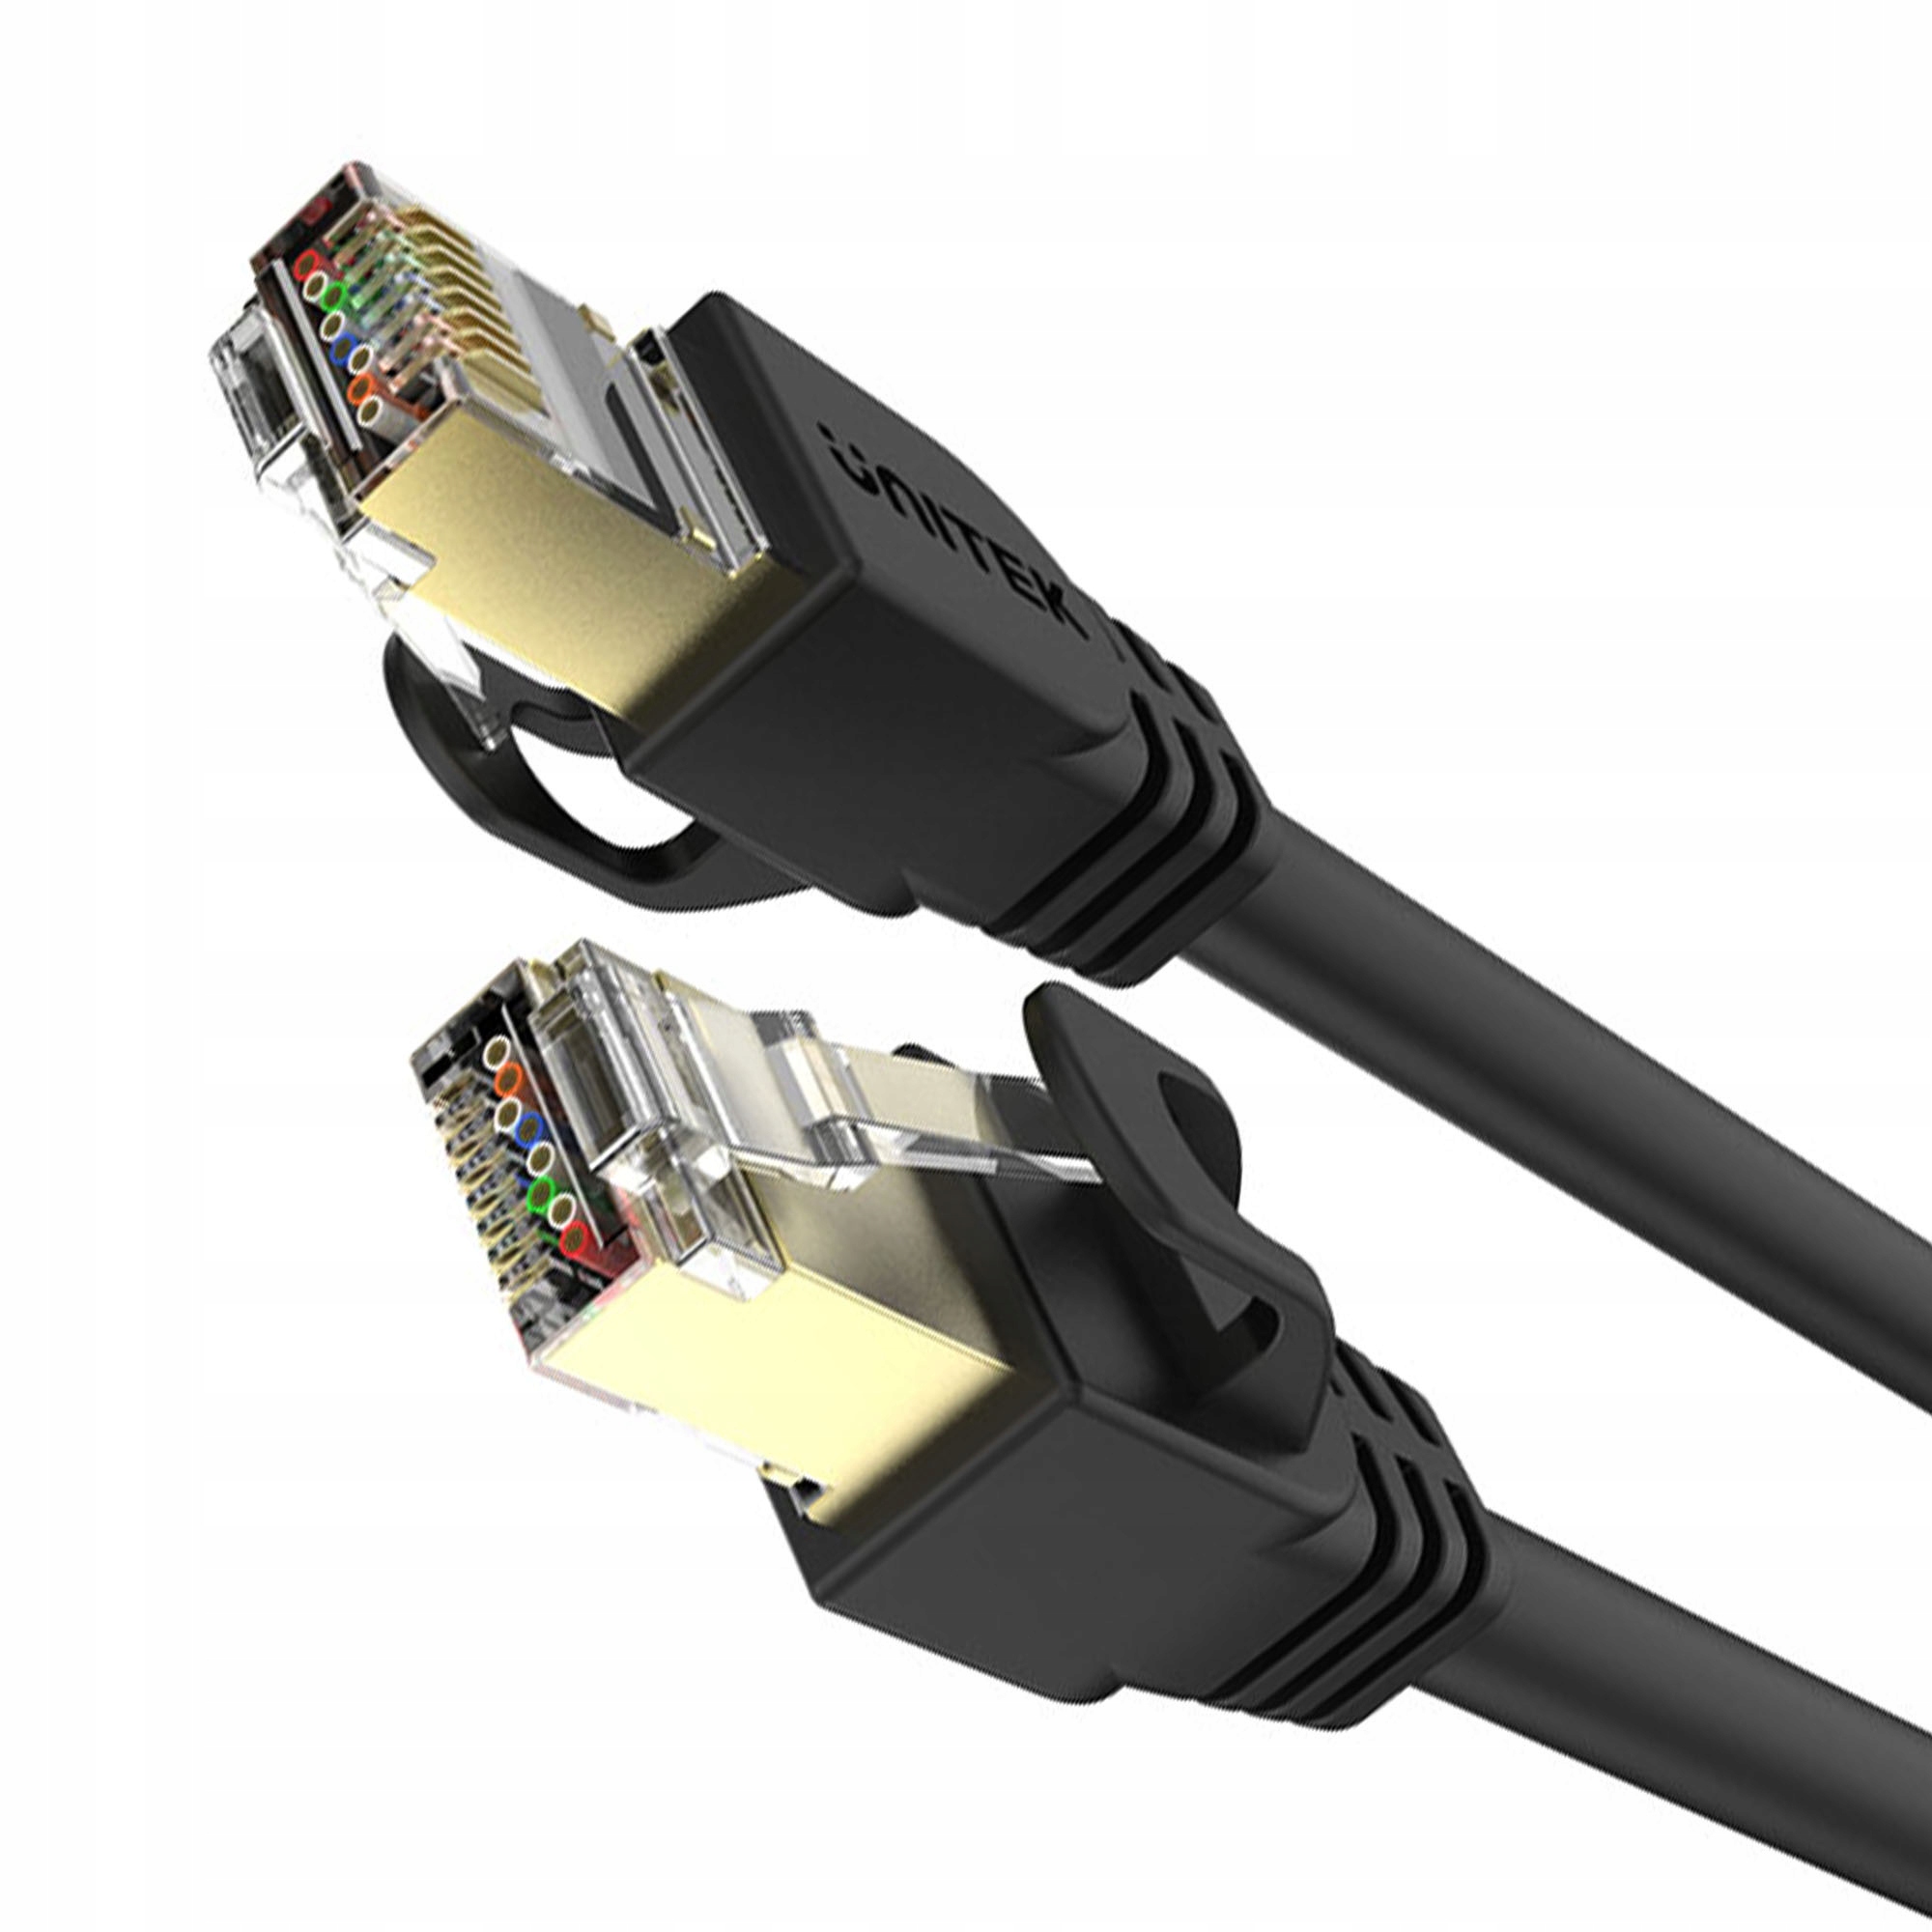 Elfcam® - 10m Cable Reseau Ethernet RJ45, Cat 7 STP 100% Cuivre